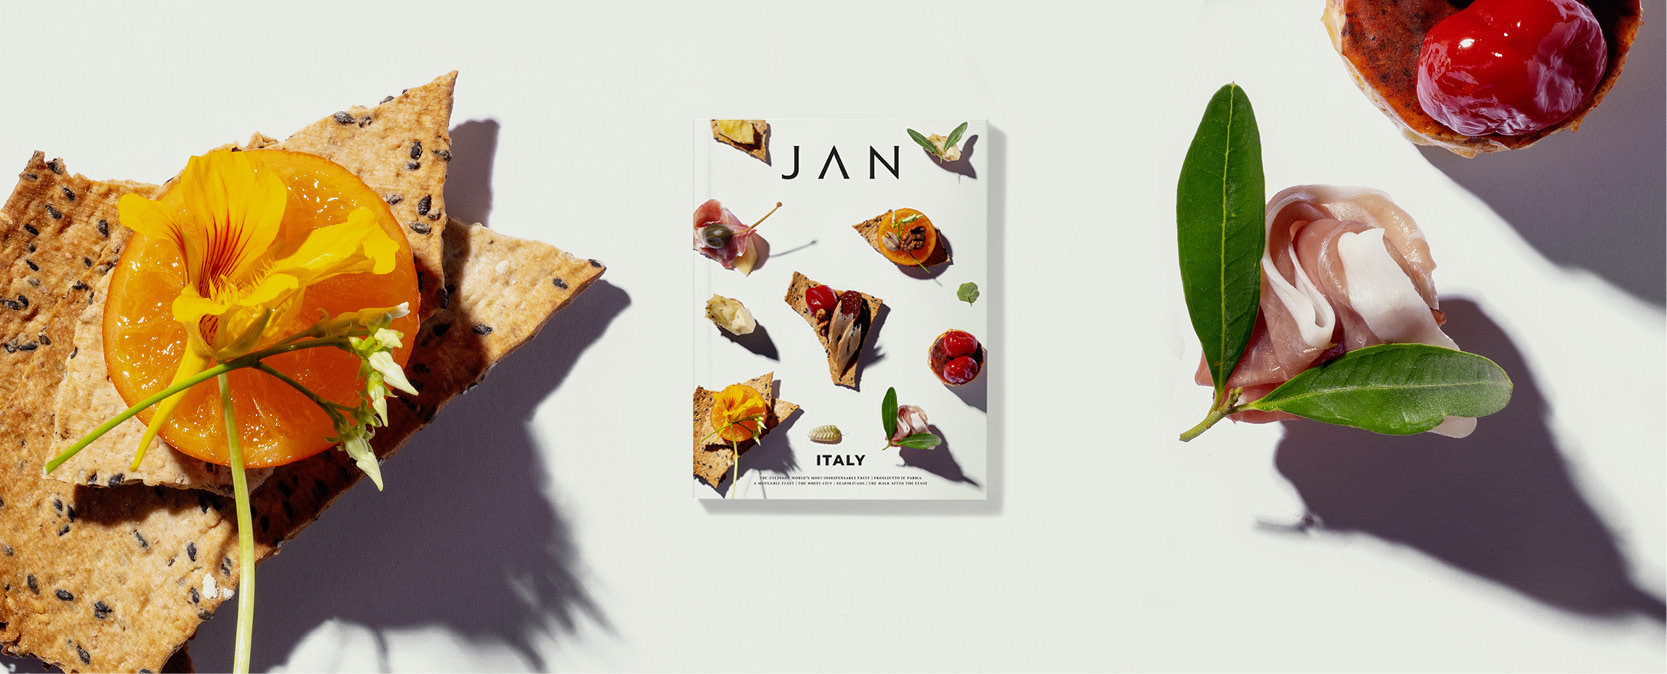 JAN - Michelin Star Chef & Restaurant | Jan Hendrik van der Westhuizen